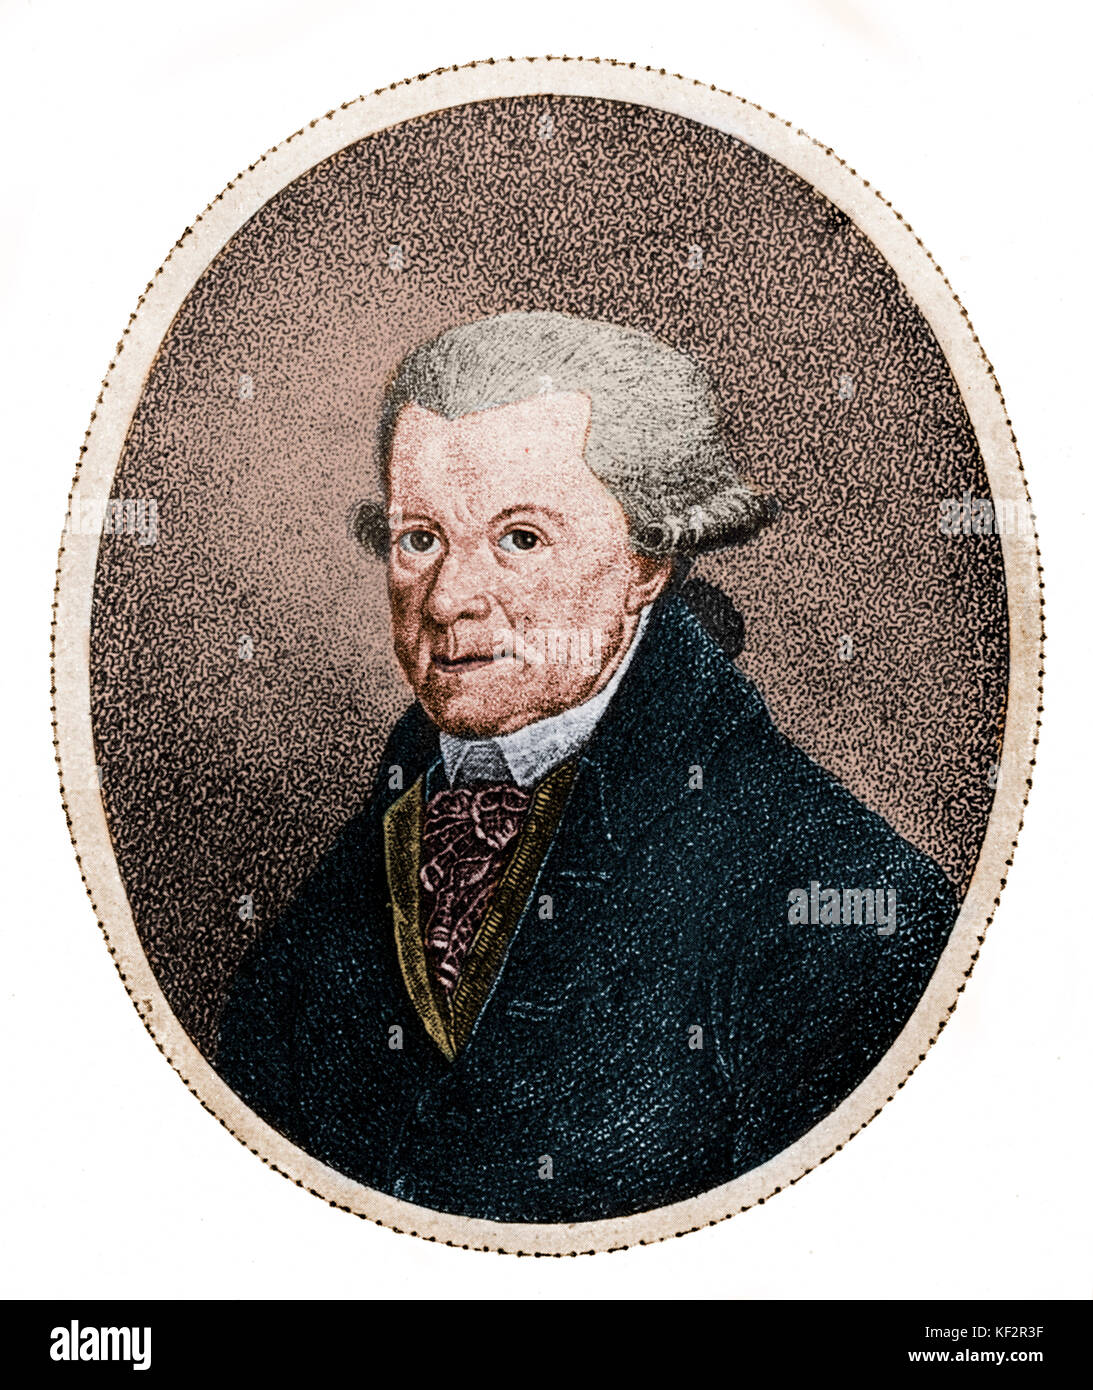 Johann Michael Haydn, Portrait. Der oesterreichische Komponist, 1737-1806. Bruder Franz Joseph Haydn. Eingefärbte Version. Stockfoto